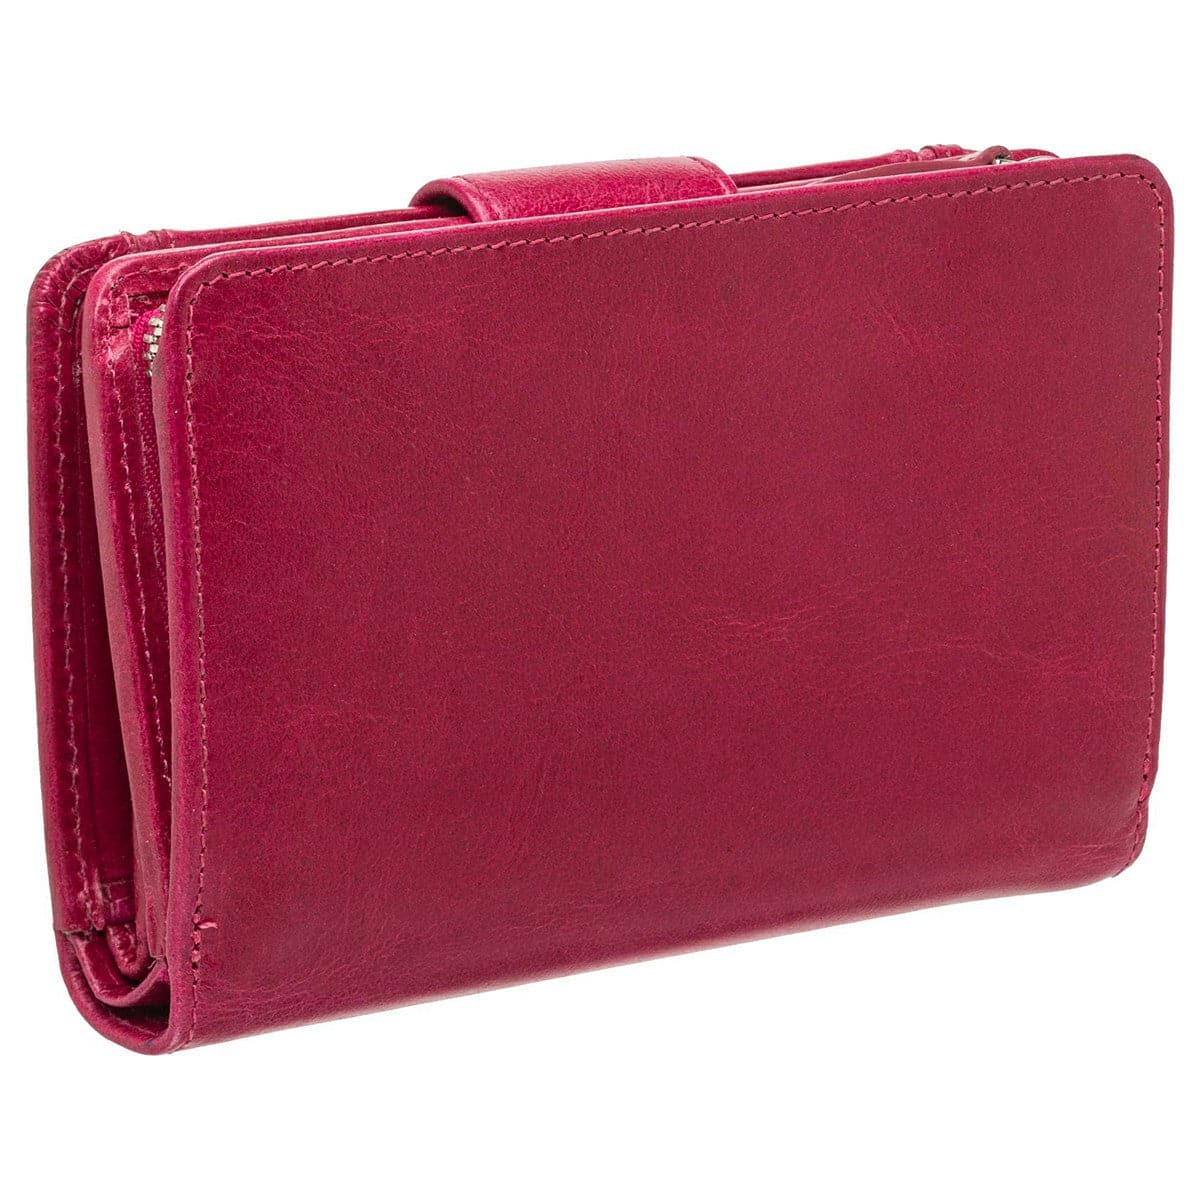 Mancini South Beach 3.75" RFID Secure Medium Clutch Wallet